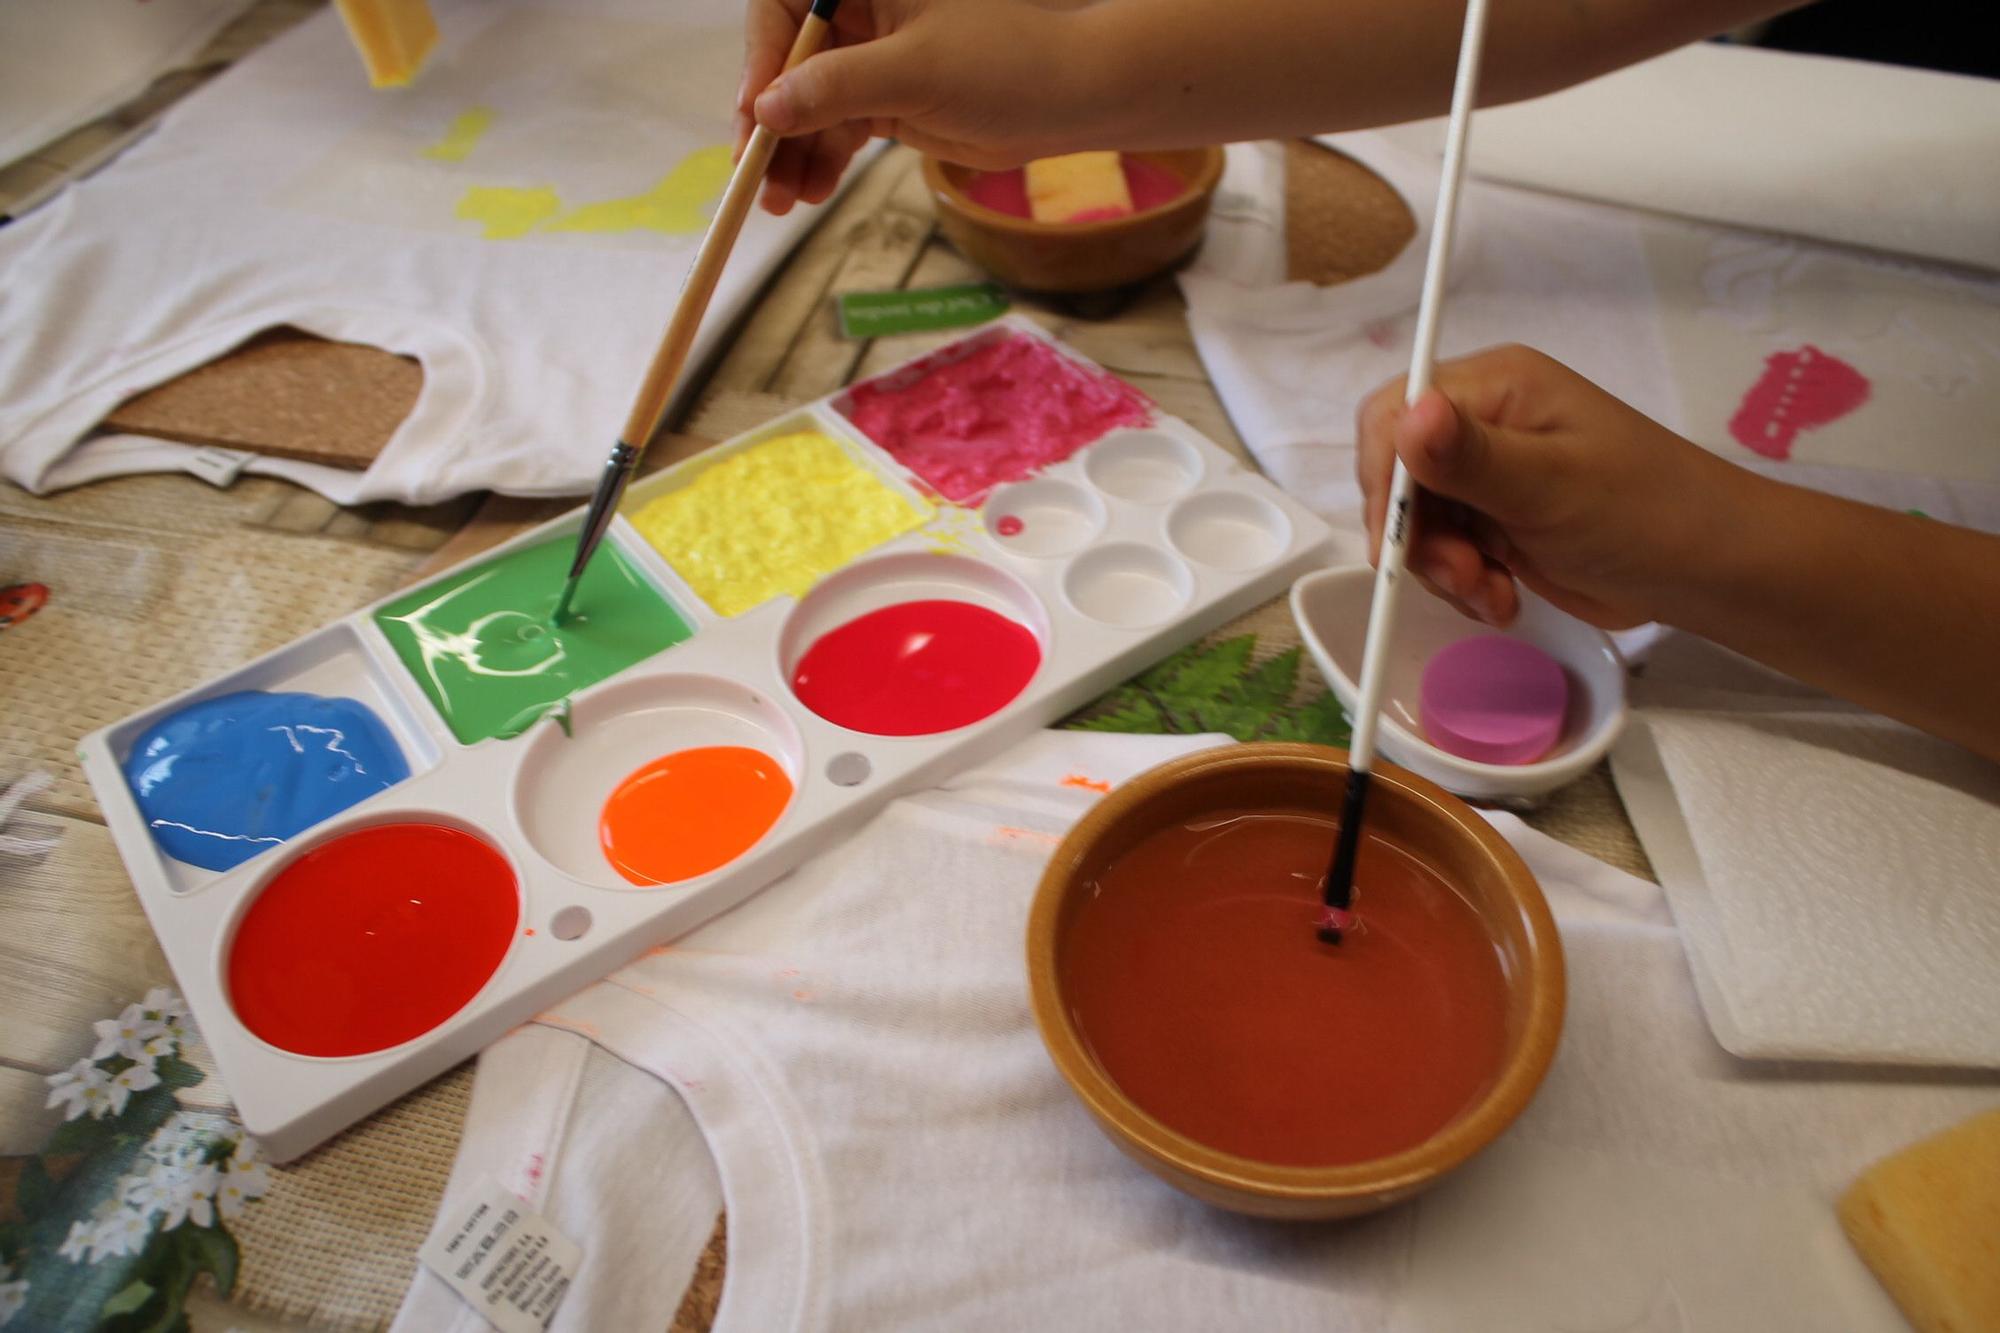 Galería de imágenes: Nietos y abuelos pintan camisetas en el taller de las fiestas de Cala de Bou